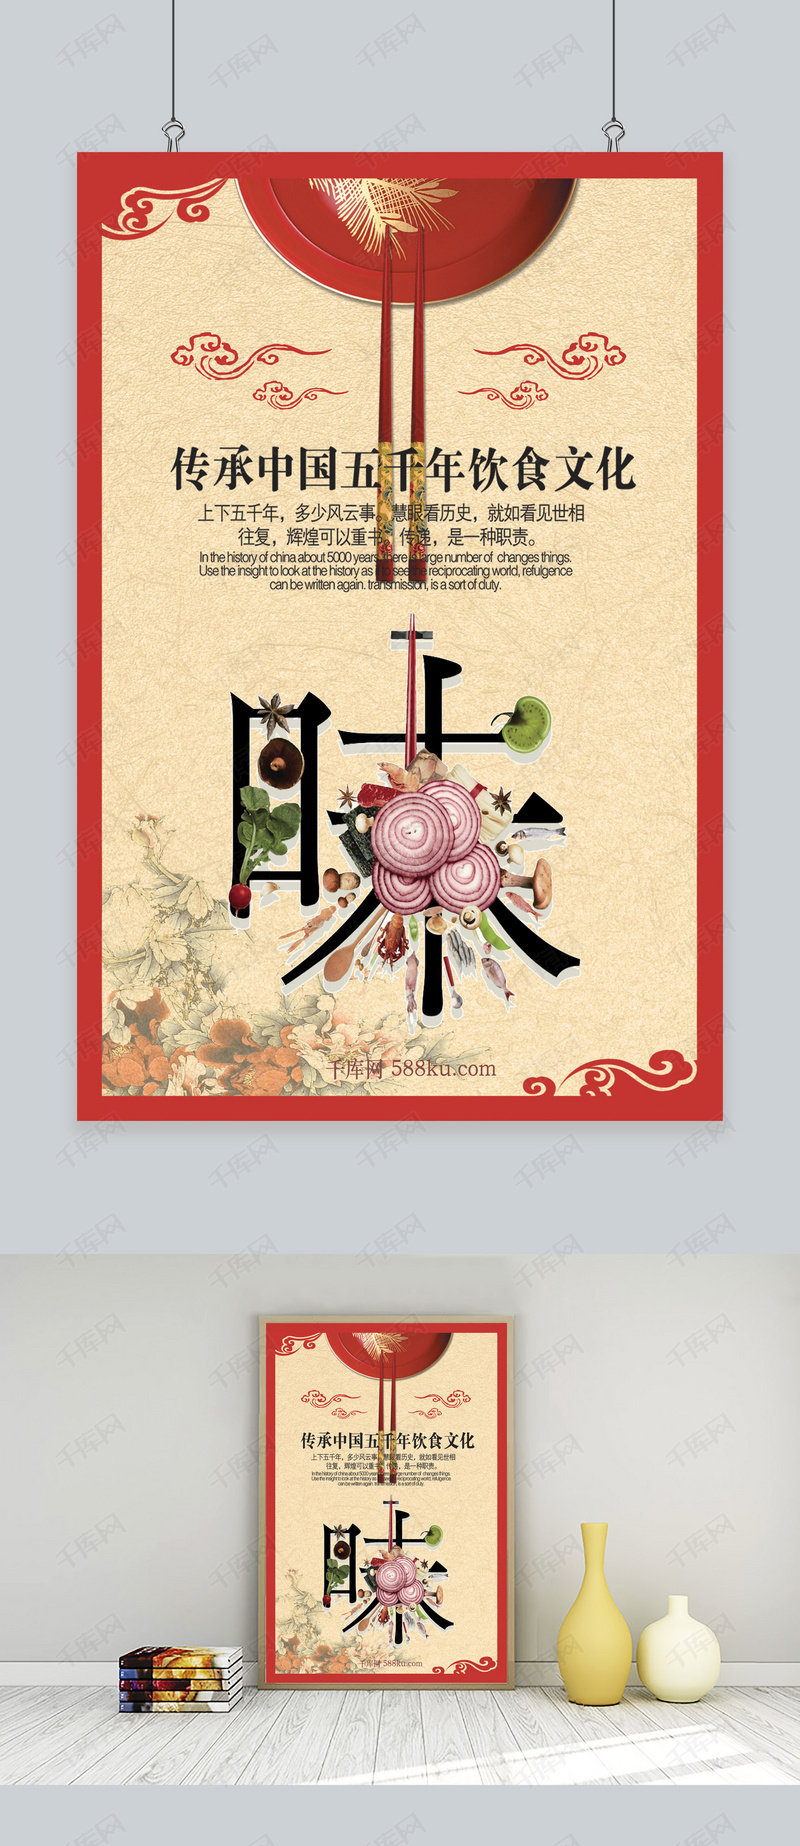 筷子文化中国味道海报